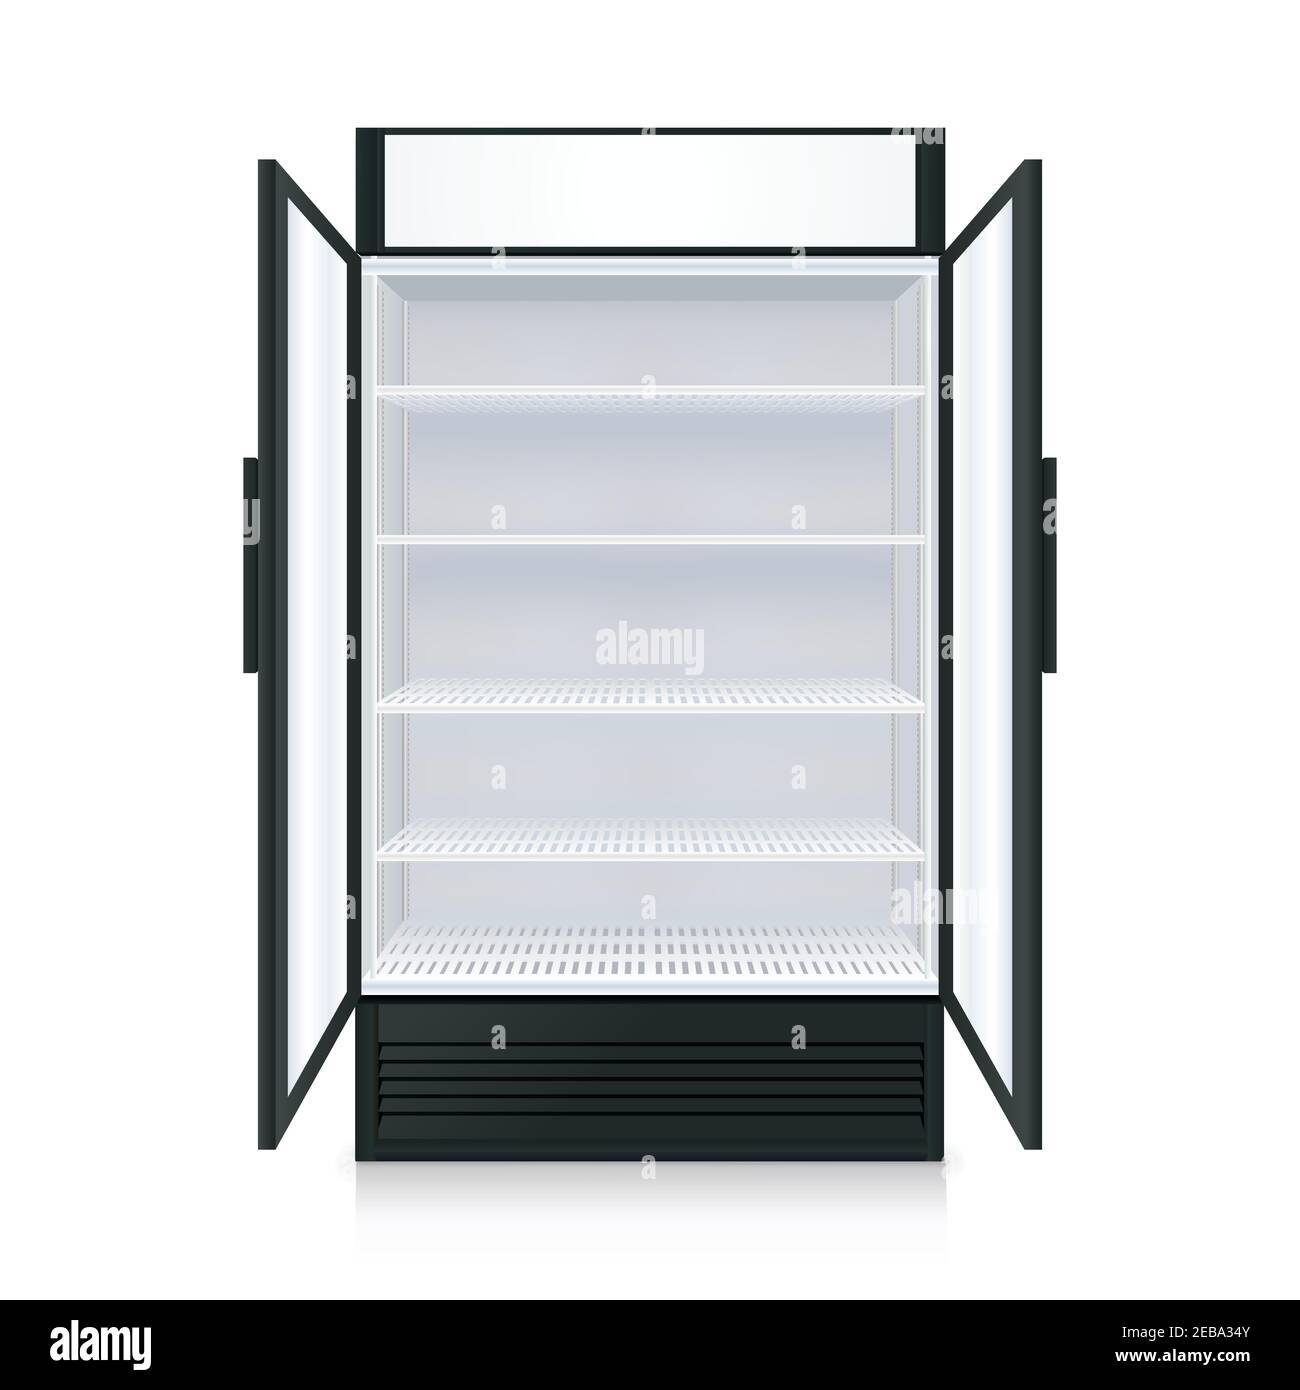 Réfrigérateur commercial vide réaliste avec étagères et portes ouvertes transparentes illustration vectorielle isolée Illustration de Vecteur